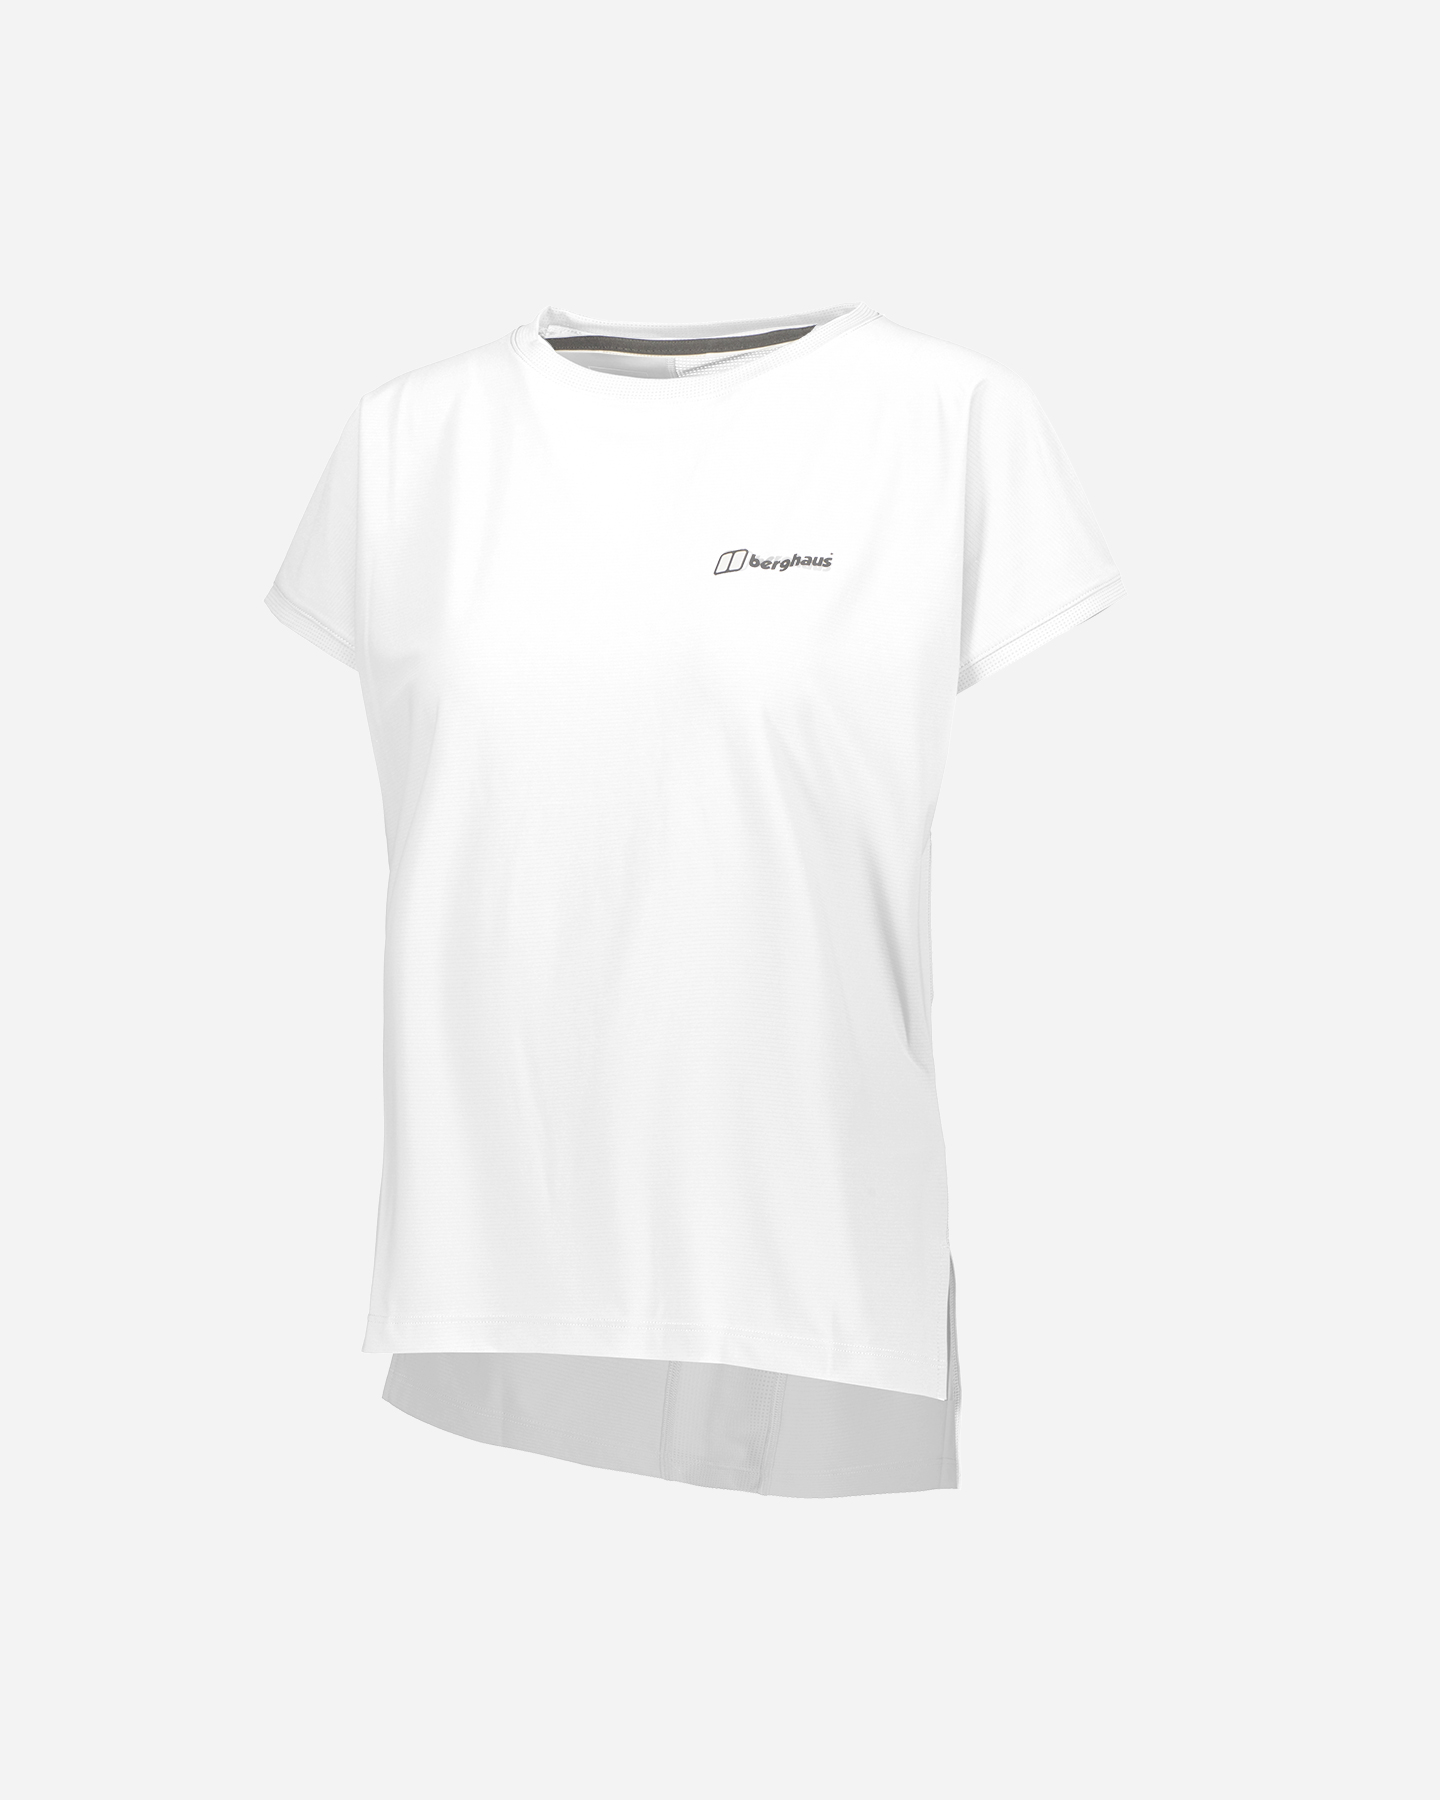 berghaus - nesna w - t-shirt - donna